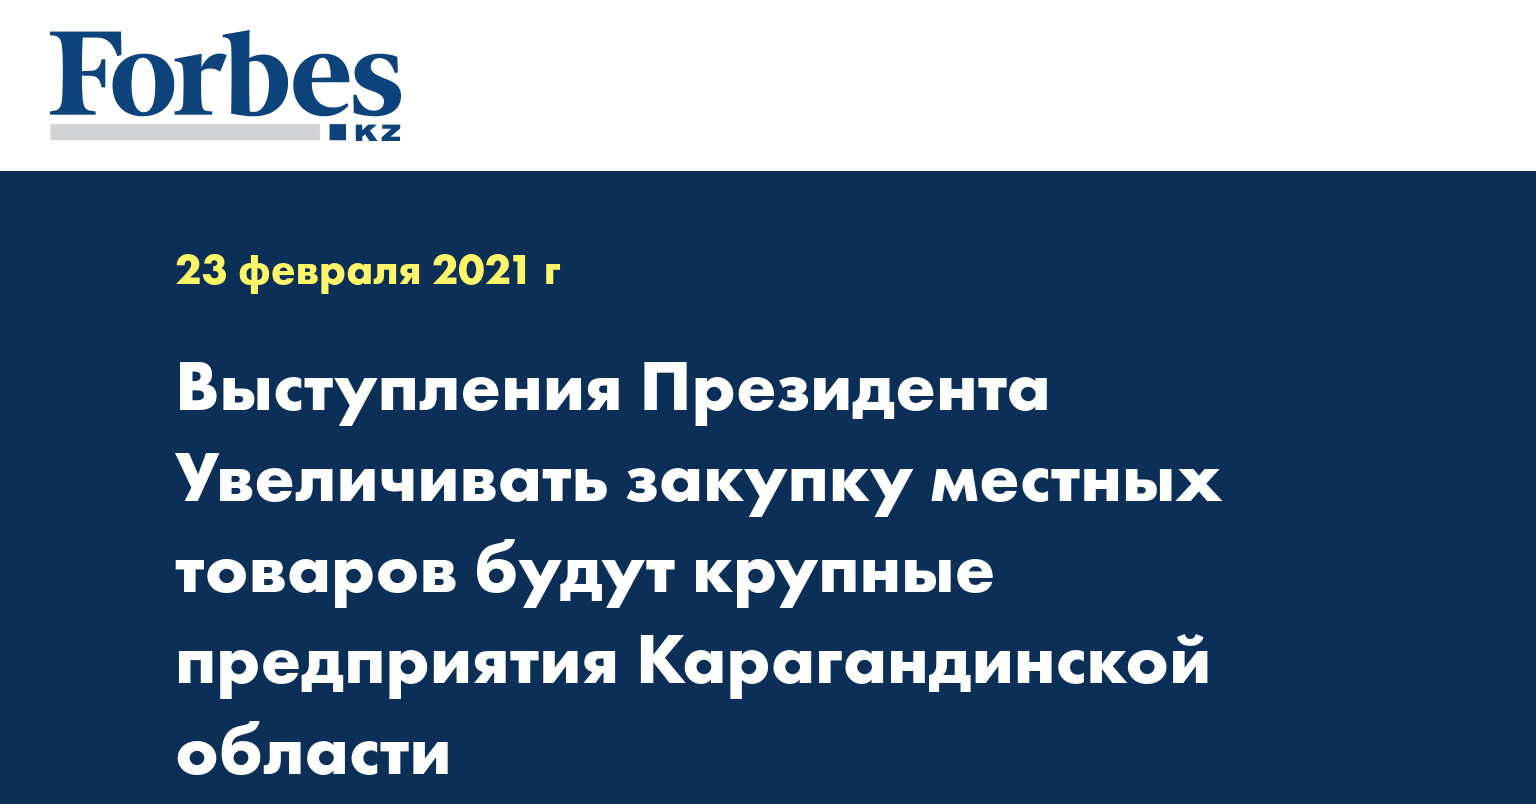 Выступления Президента Увеличивать закупку местных товаров будут крупные предприятия Карагандинской области